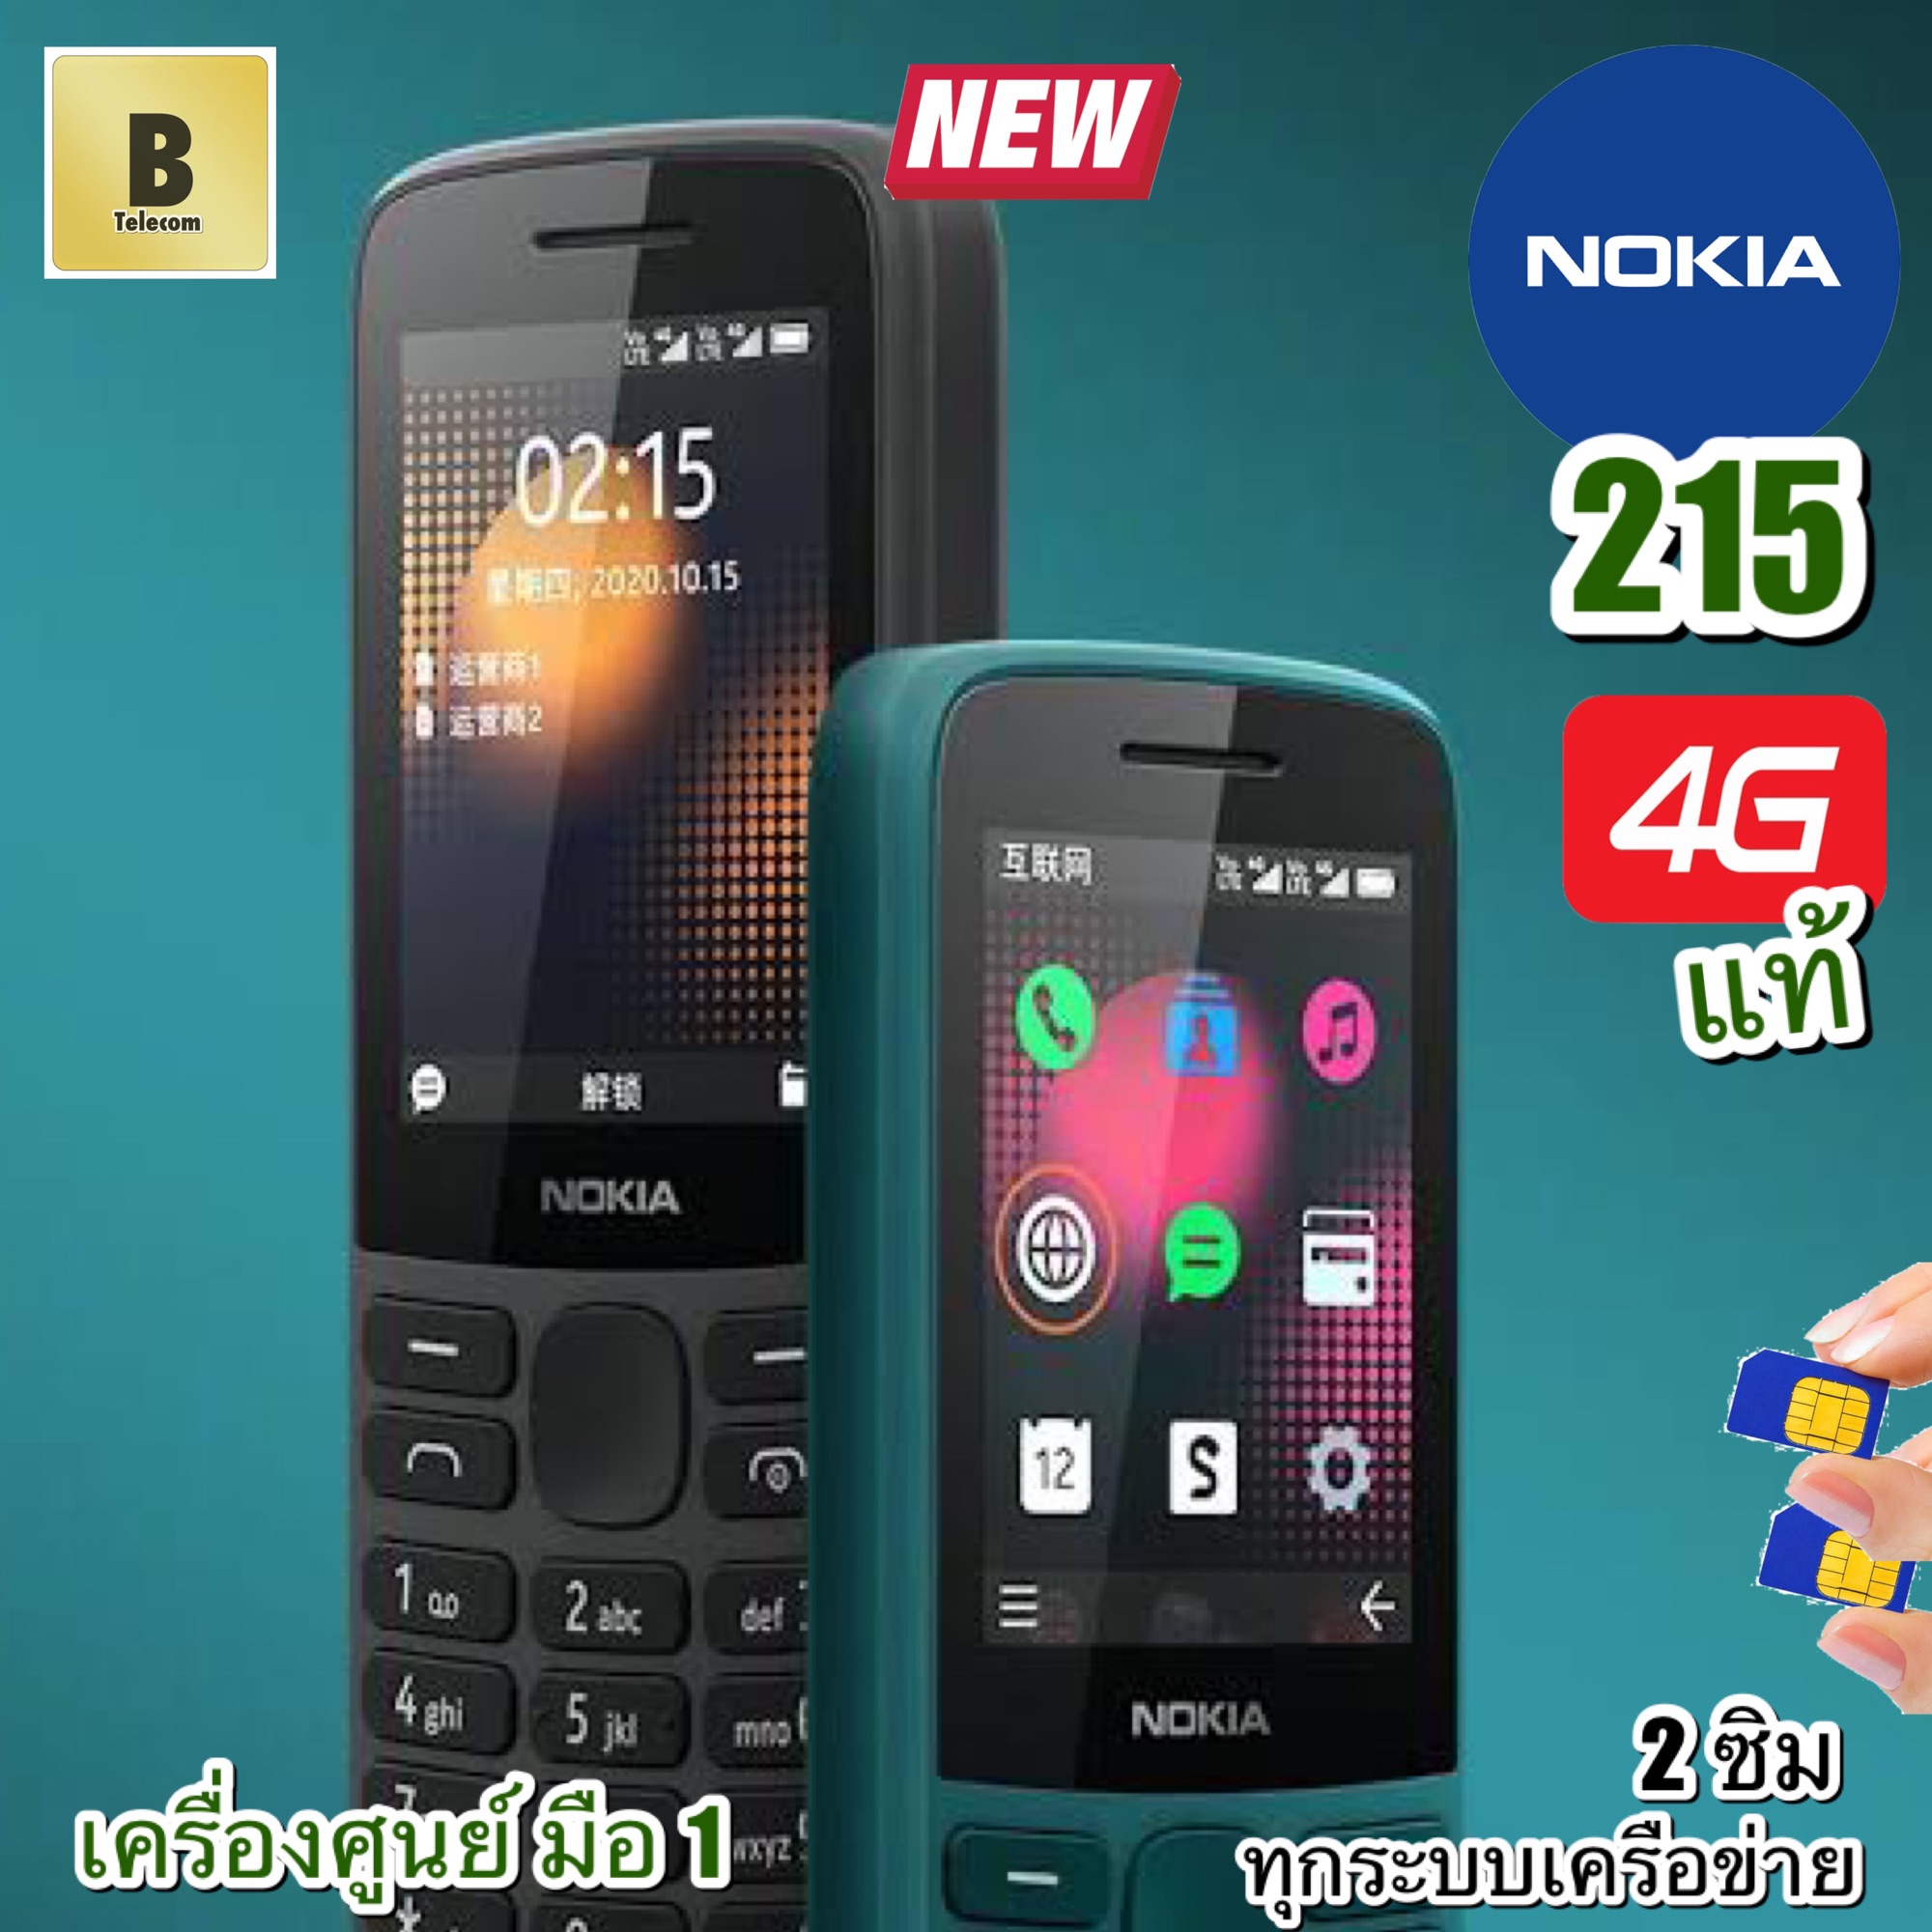 โนเกีย 215 ระบบ 4G แท้ แป้นไทย เมนูไทย สวย ทน อึด